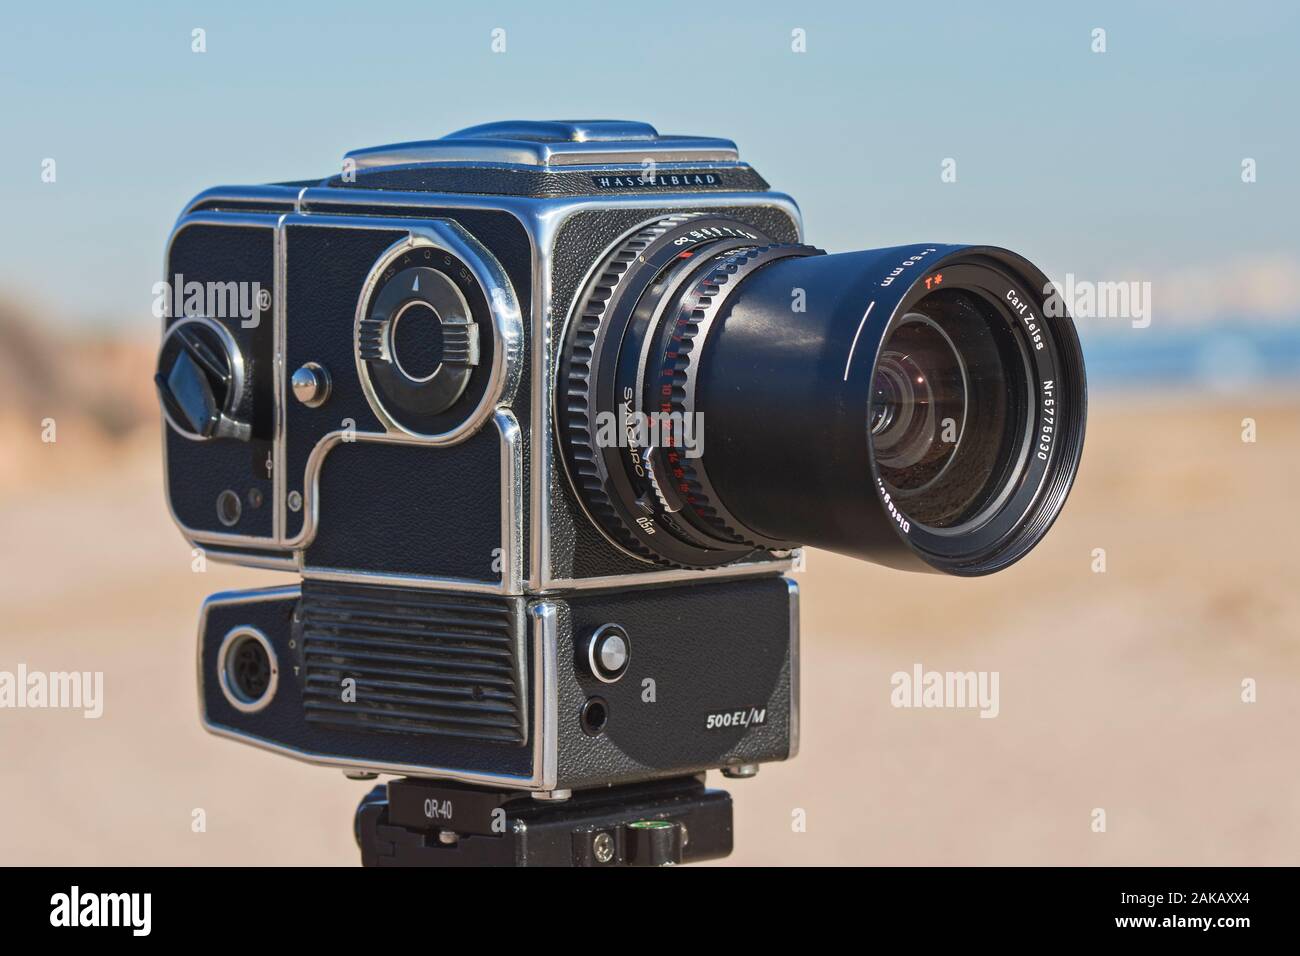 Fotocamera Hasselblad 500 EL/M modello. Realizzato in Svezia nel 1980. Obiettivo Carl Zeiss® Distagon 50 T, realizzato in Germania. Foto Stock